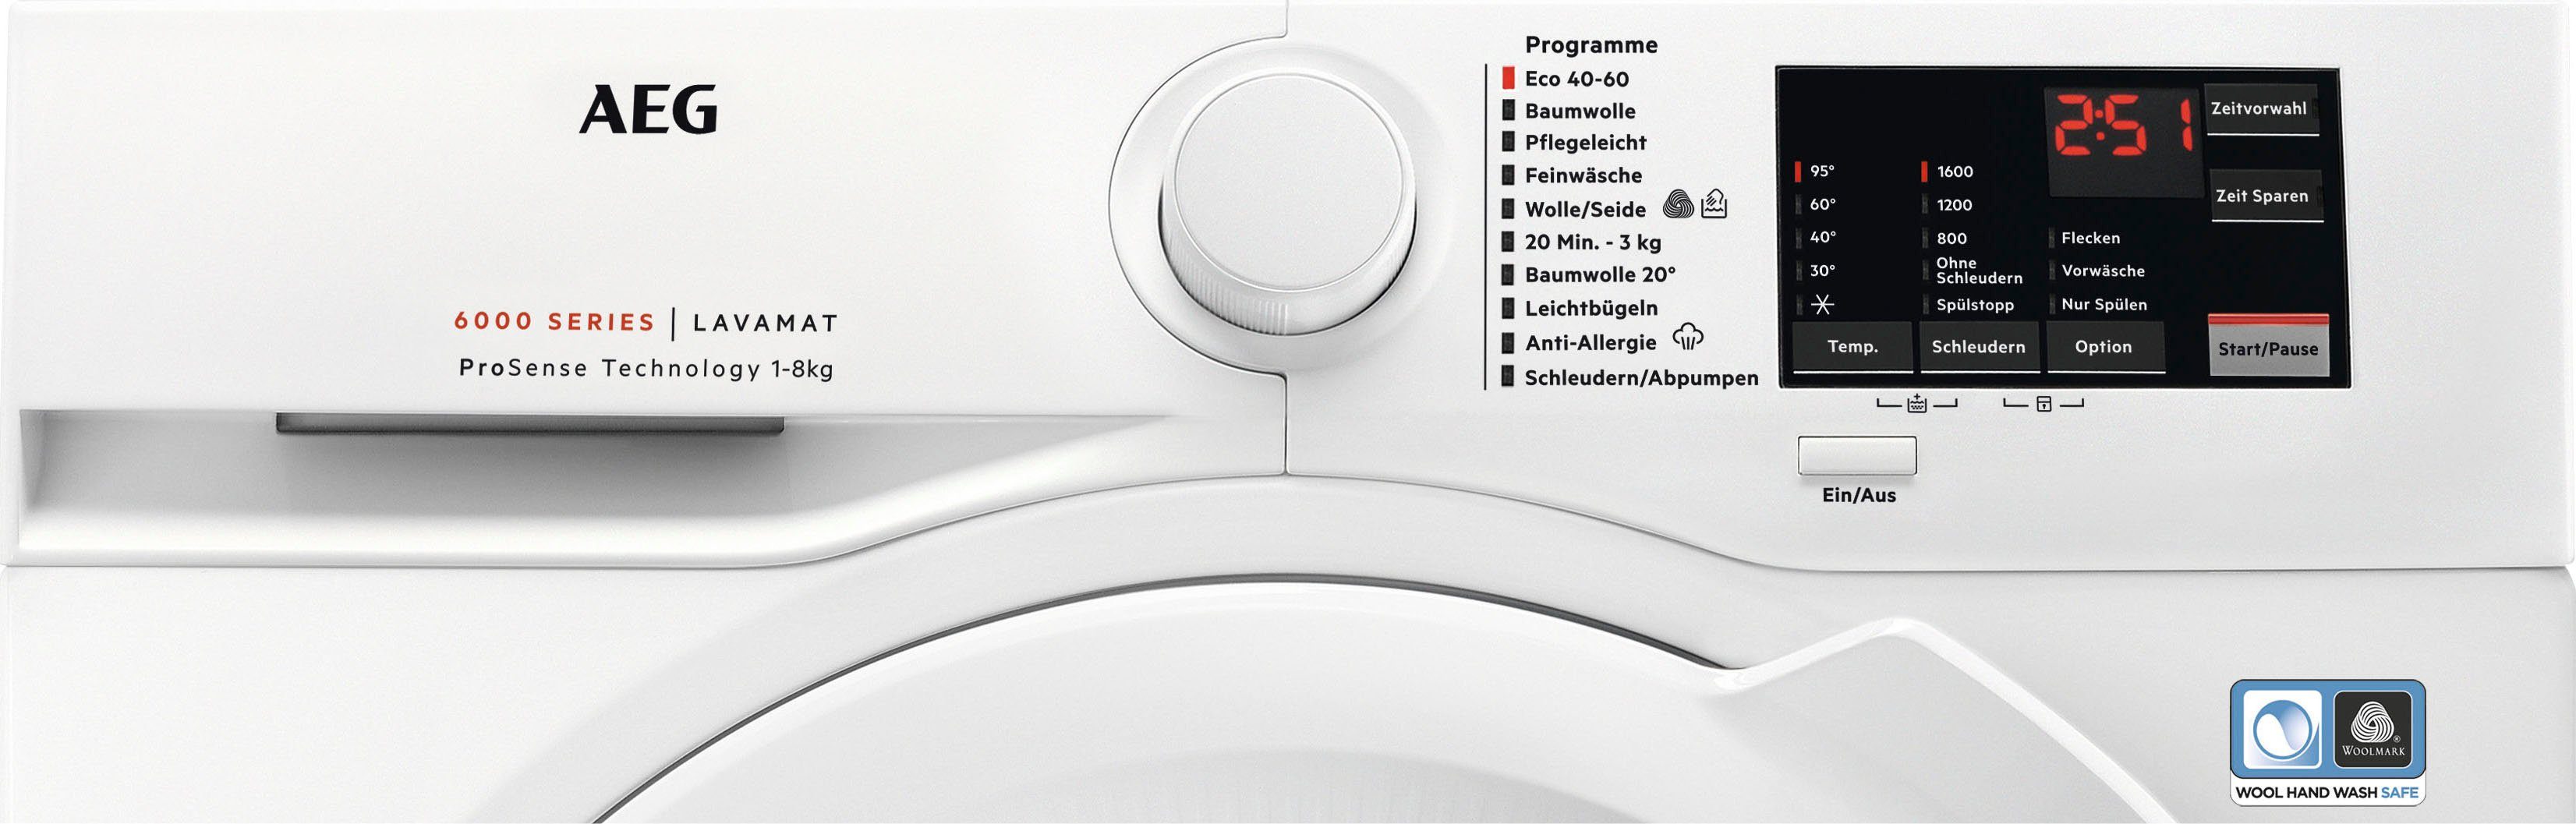 kg, Serie 6000 mit 8 Dampf U/min, AEG mit 1600 ProSense-Technologie Programm Waschmaschine Hygiene-/ L6FA68FL, Anti-Allergie